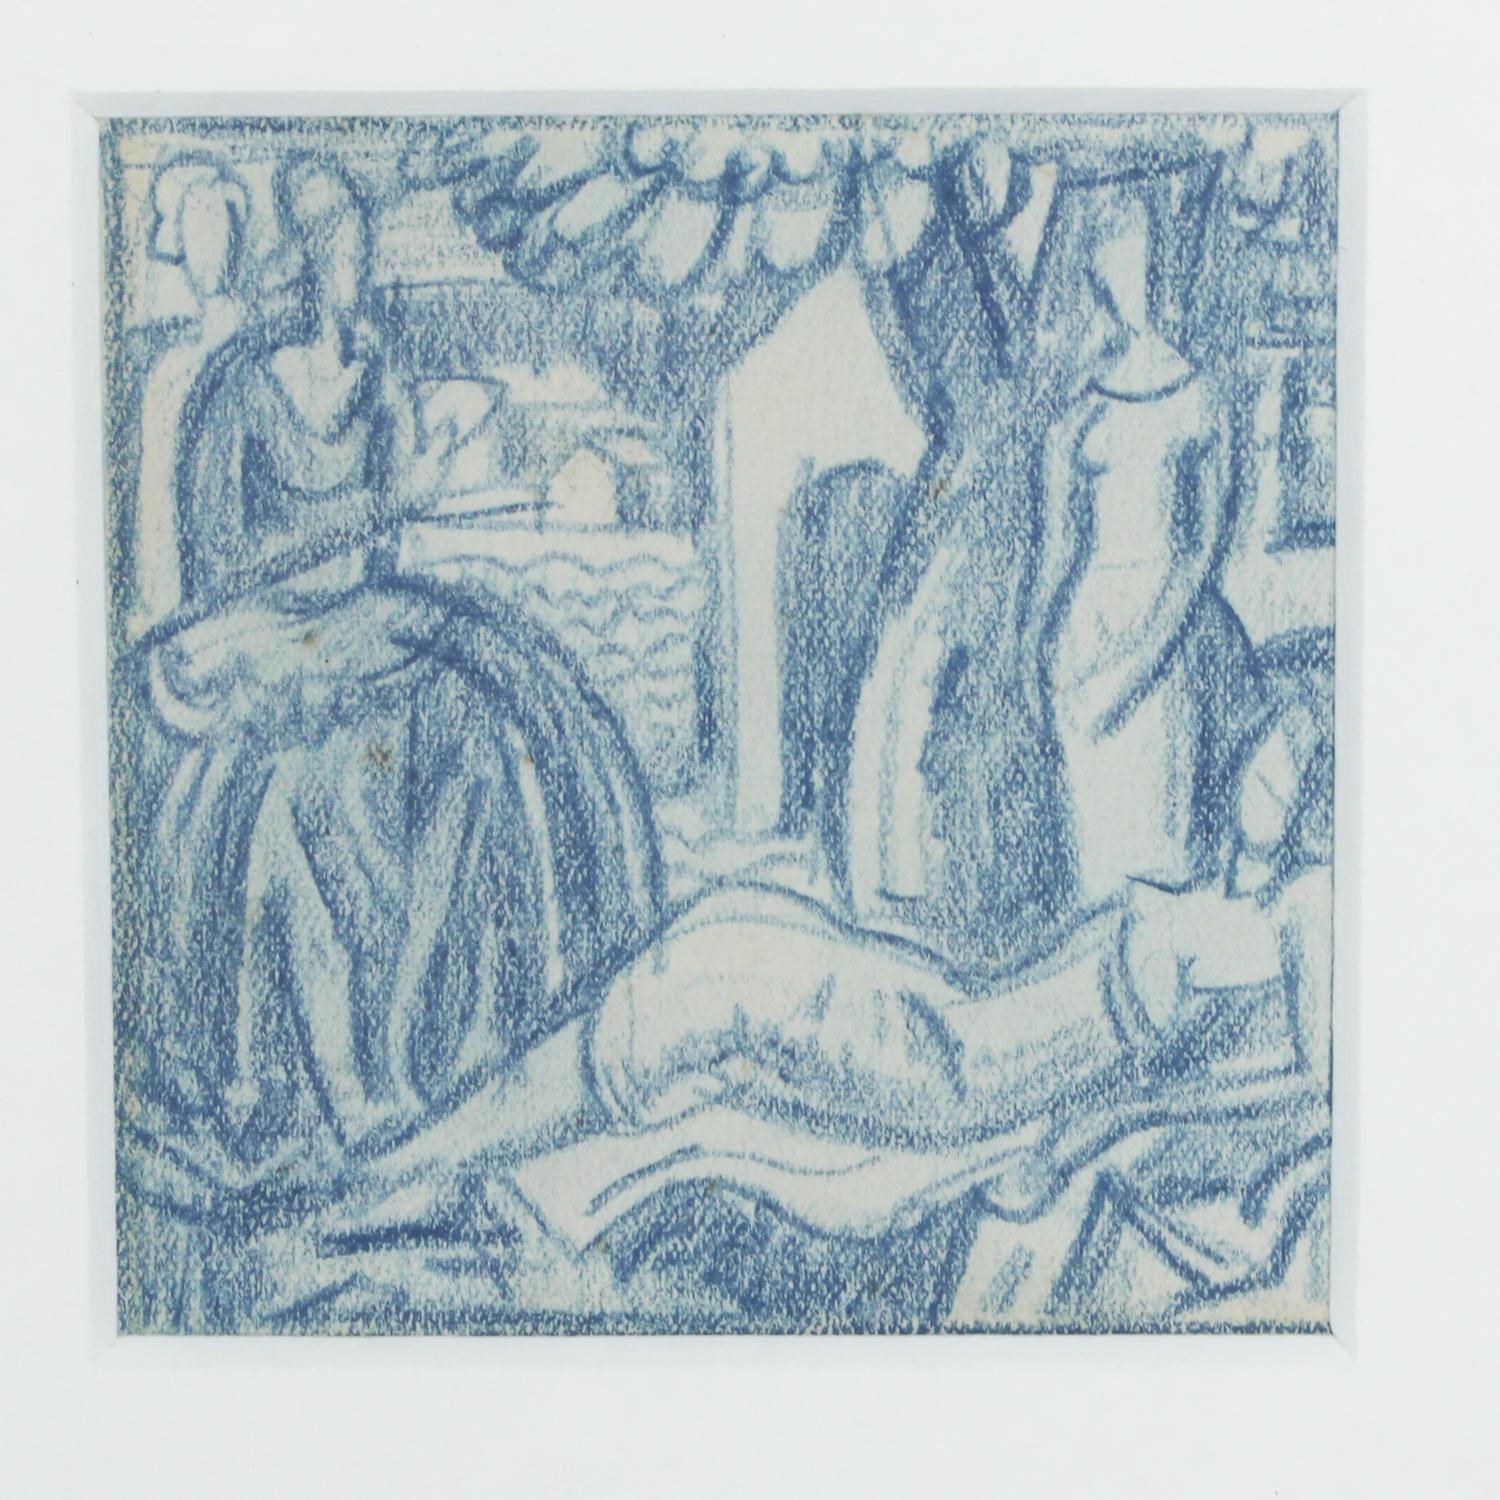 Ensemble de six vignettes au crayon bleu, peut-être des dessins pour des illustrations ou des peintures Art déco ultérieures. Support : crayon bleu sur papier dans un cadre plus tardif.

Artiste : Walpole Champneys (1879-1961).






 